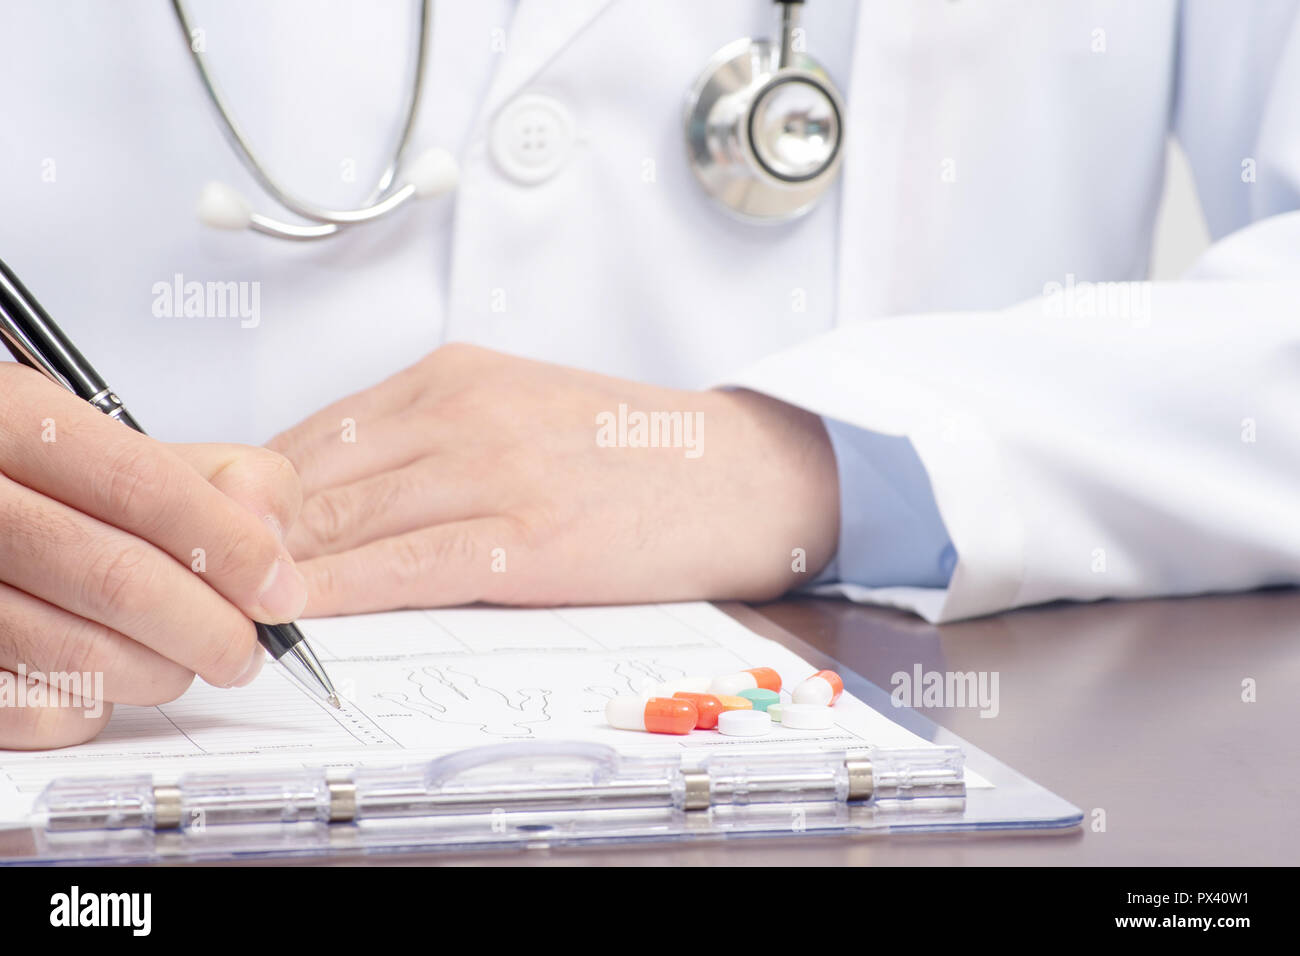 Ein männlicher Arzt schriftlich über die medizinische Form mit dem Stethoskop in der Nähe Stockfoto